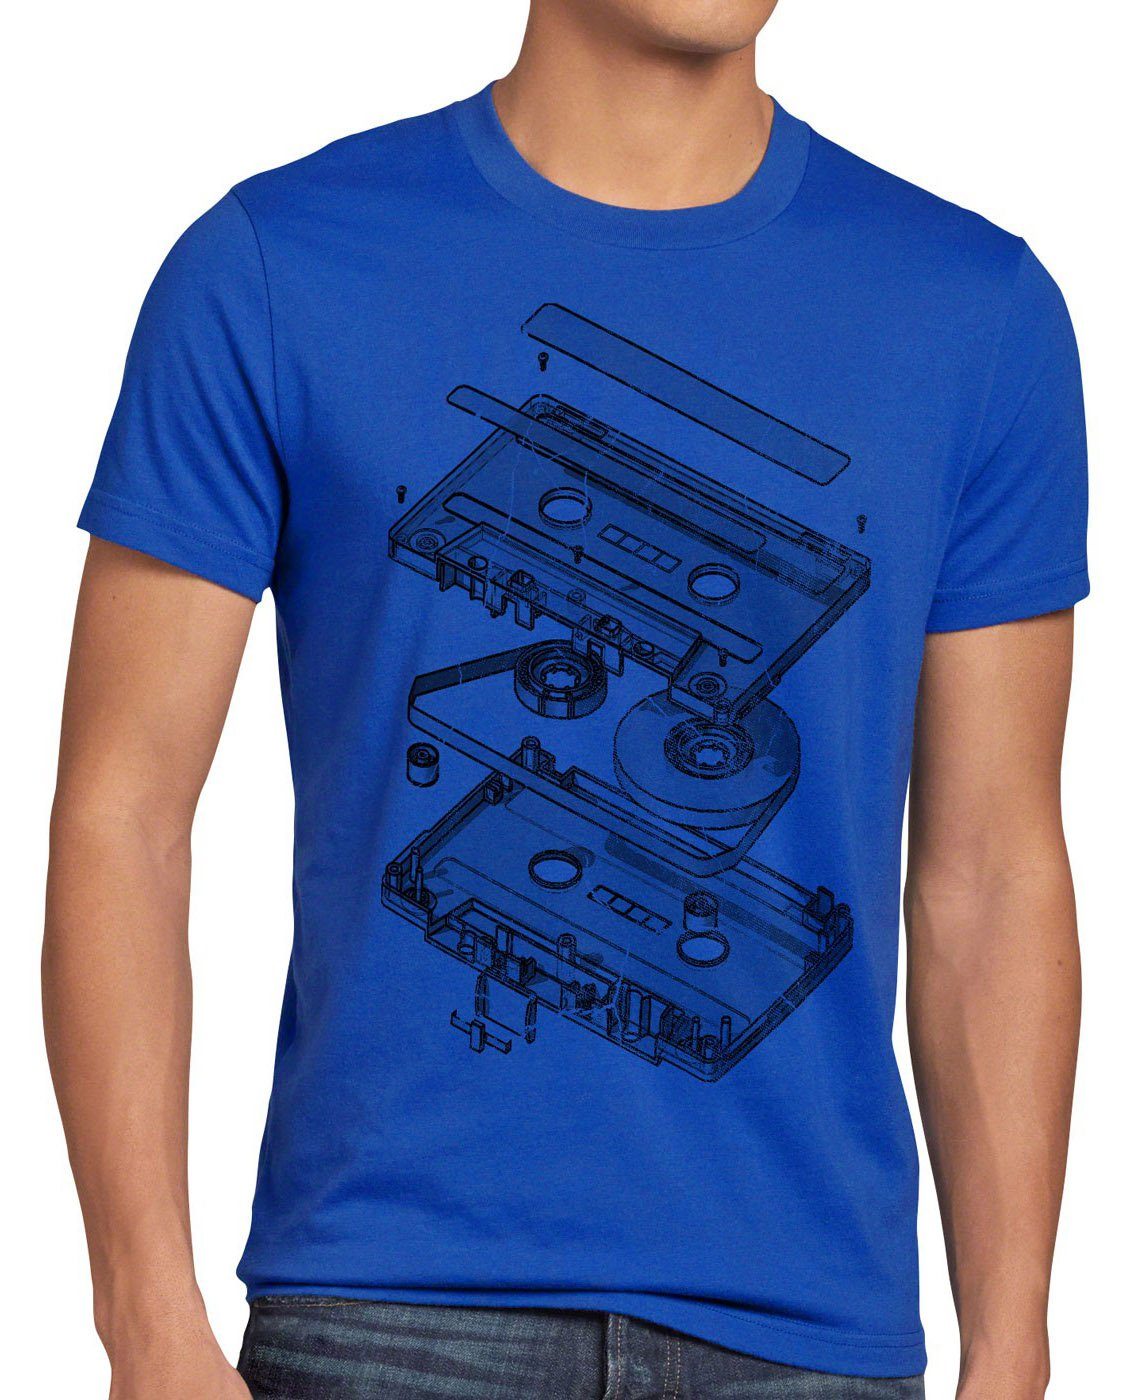 style3 Print-Shirt Herren T-Shirt Tape Kassette mc dj 3D turntable ndw analog disko cd 80er vinyl blau